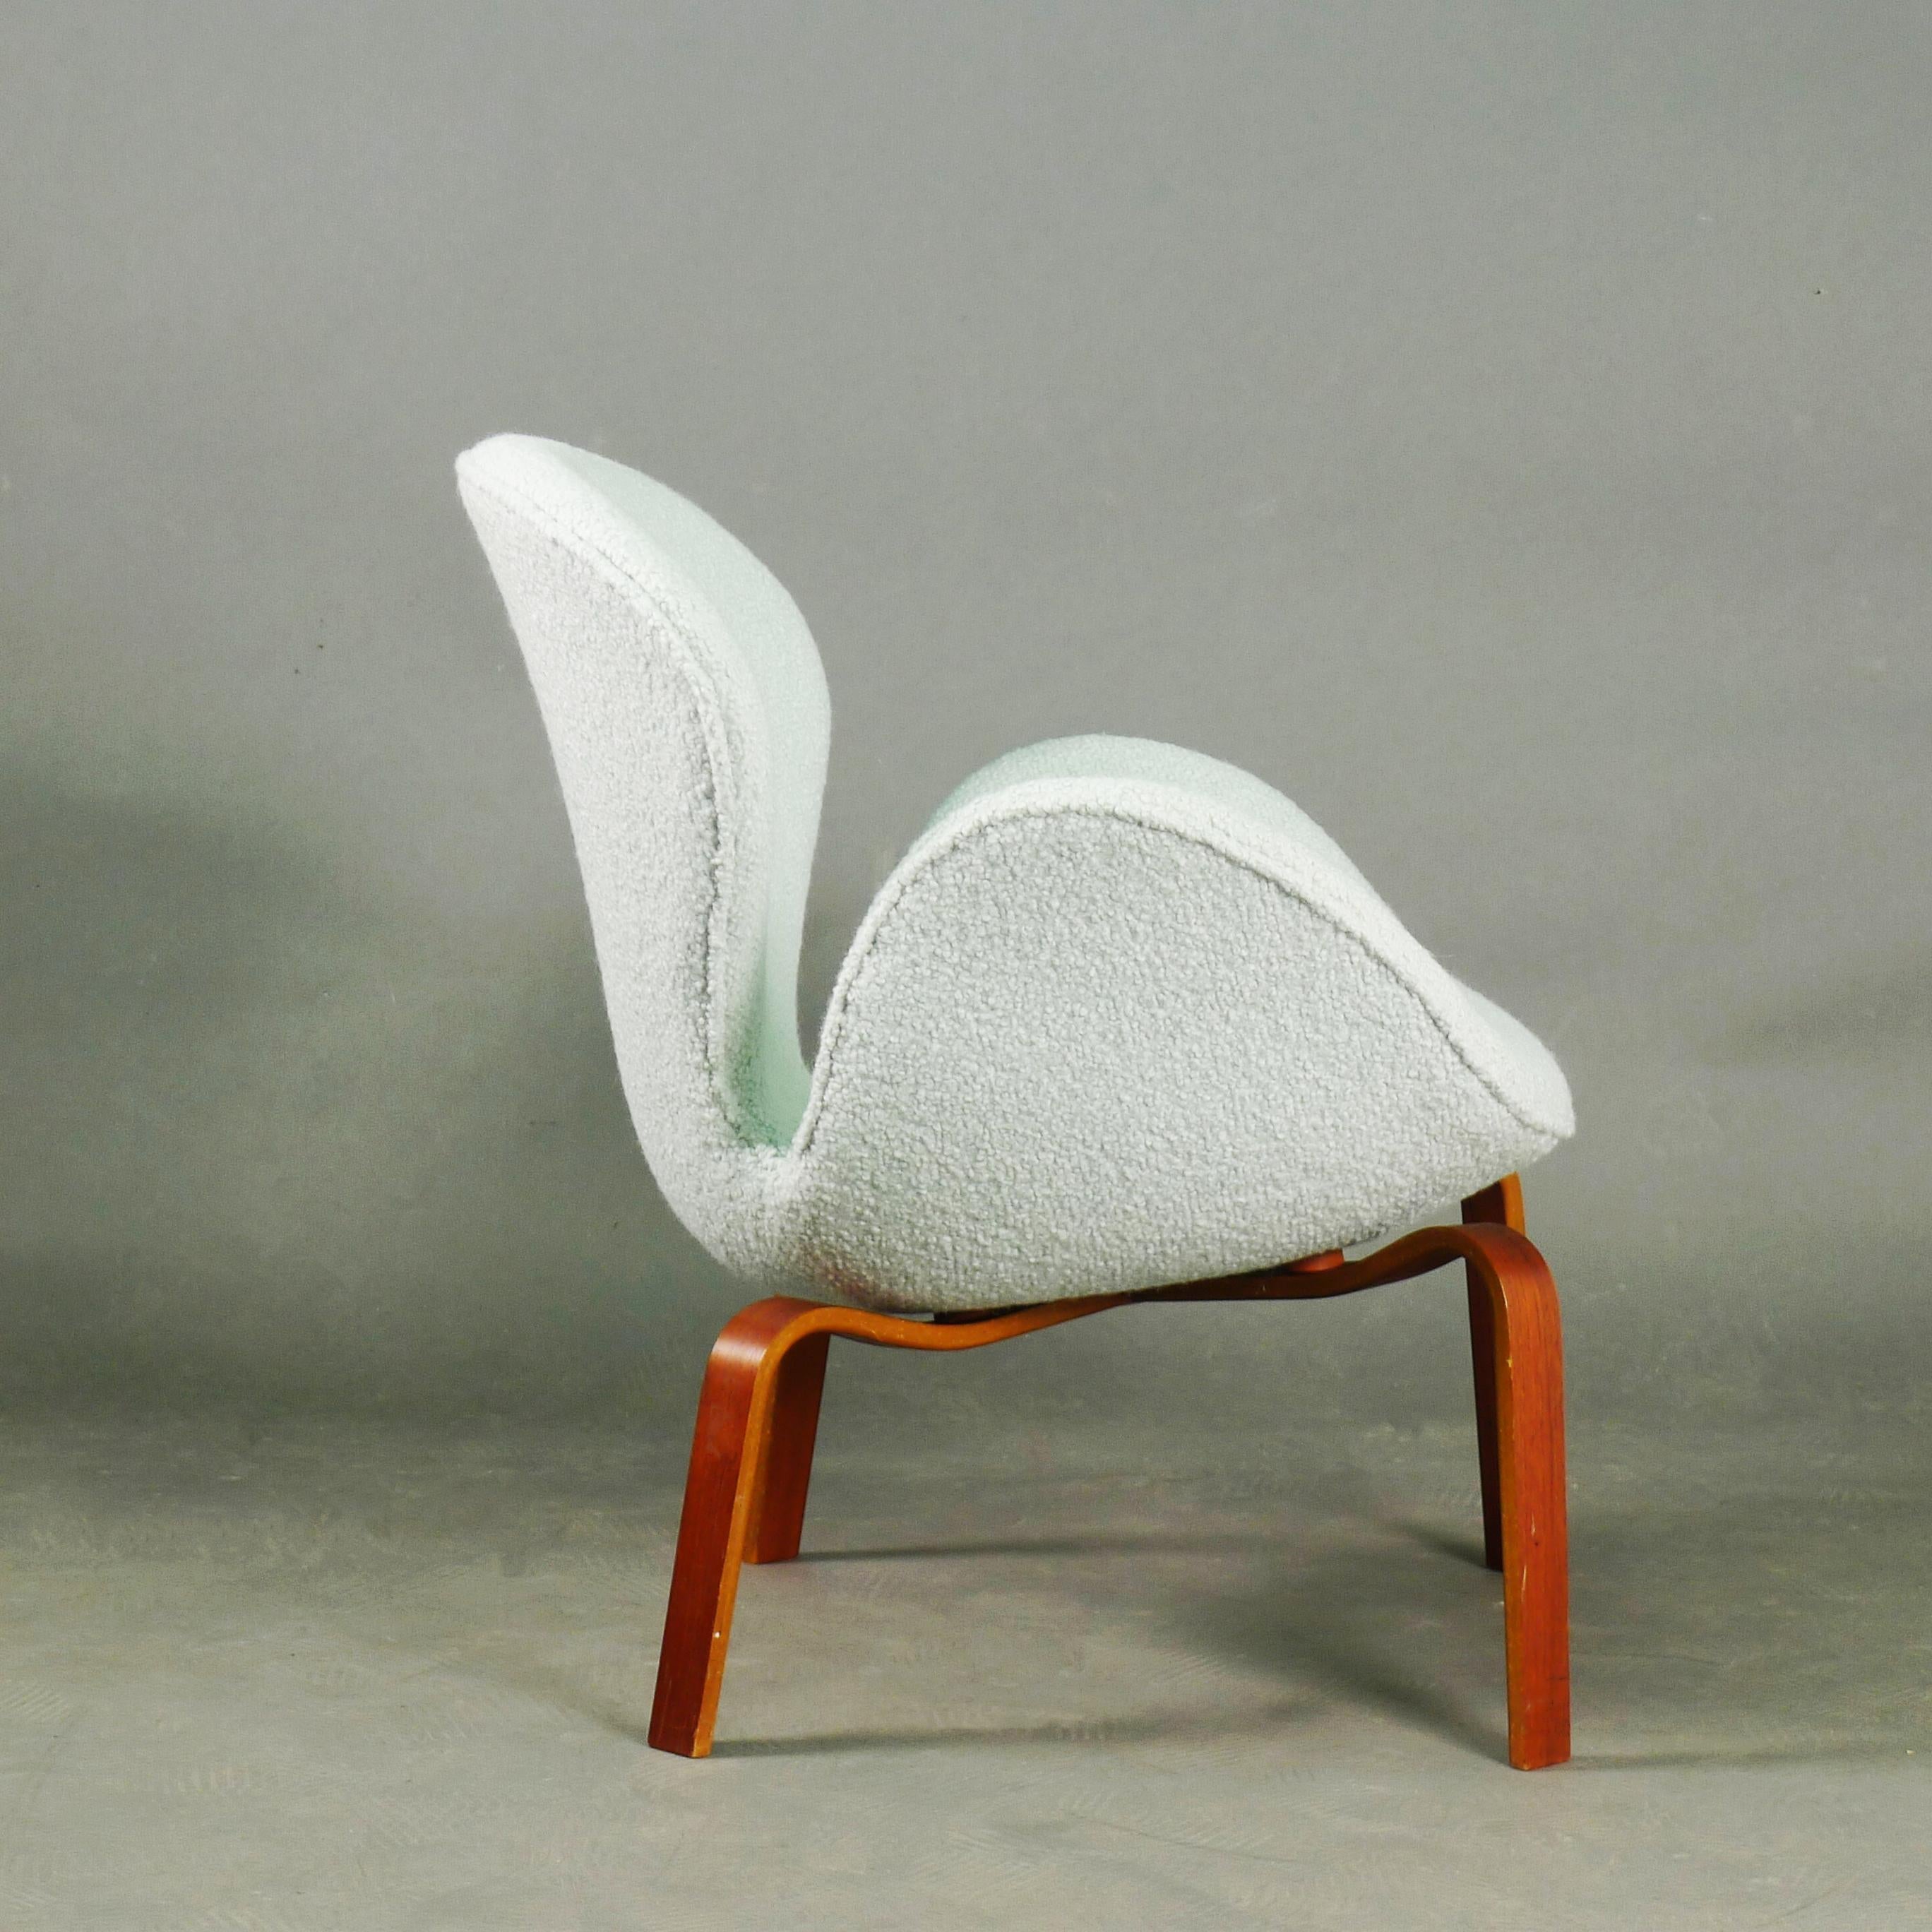 Seltener originaler Schwanenstuhl, entworfen von Arne Jacobsen und hergestellt von Fritz Hansen in Kopenhagen, Dänemark.  

In den 1960er Jahren wurde für einen begrenzten Zeitraum eine kleine Anzahl von Swan-Stühlen mit Holzbeinen anstelle von